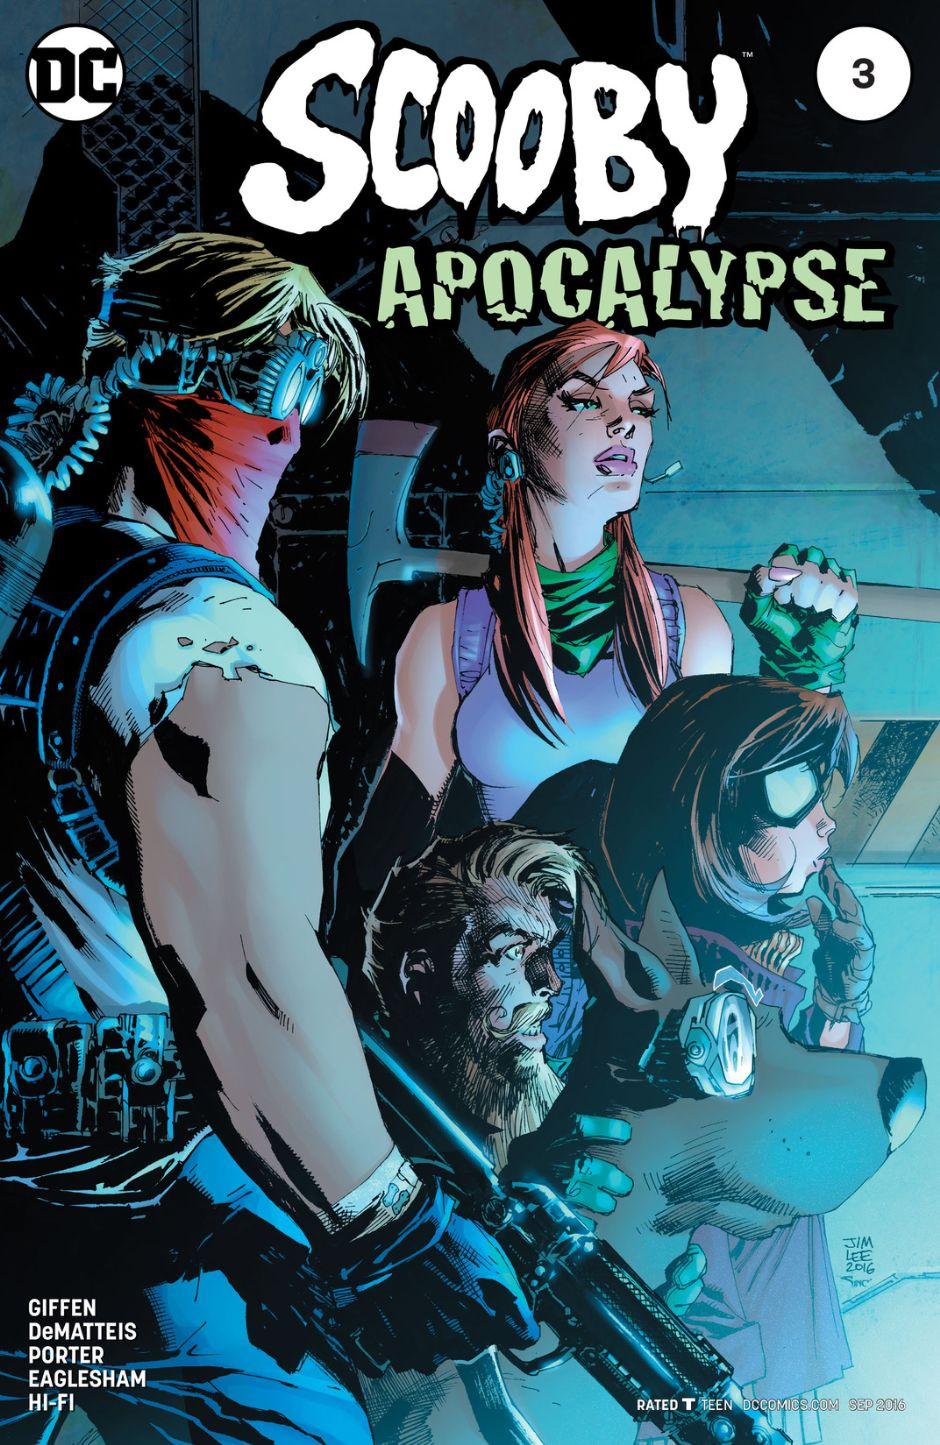 Scooby Apocalypse Vol. 1 #3